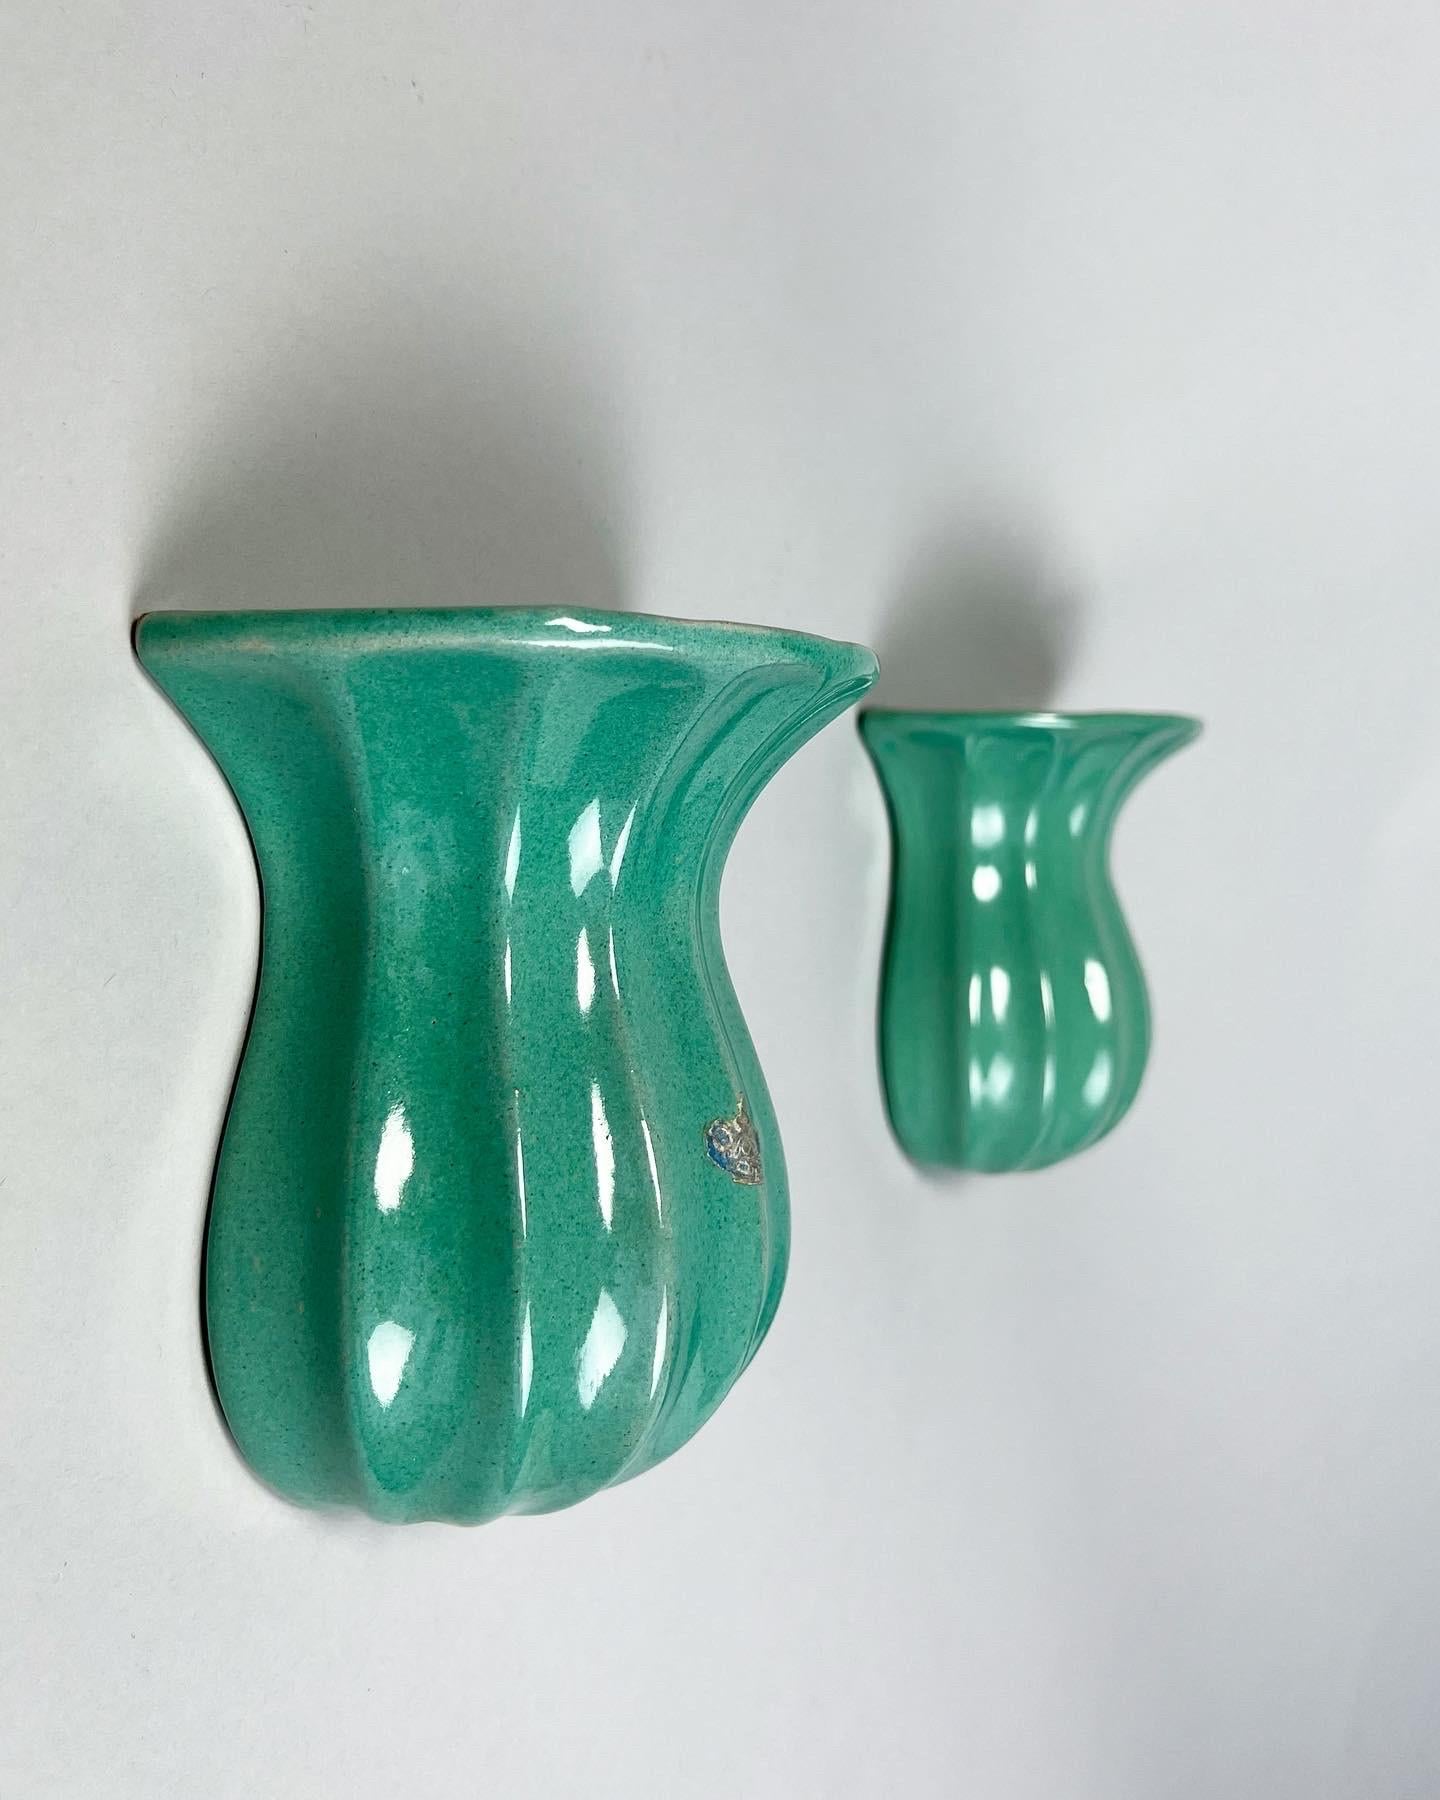 Paire de vases muraux produits par Upsala Ekeby en Suède à la fin des années 1940 et au début des années 1950 pour la marque Örjan ceramics, qui était vendue dans un grand magasin suédois. 

Fabriqué à la main en faïence, émaillé dans des teintes